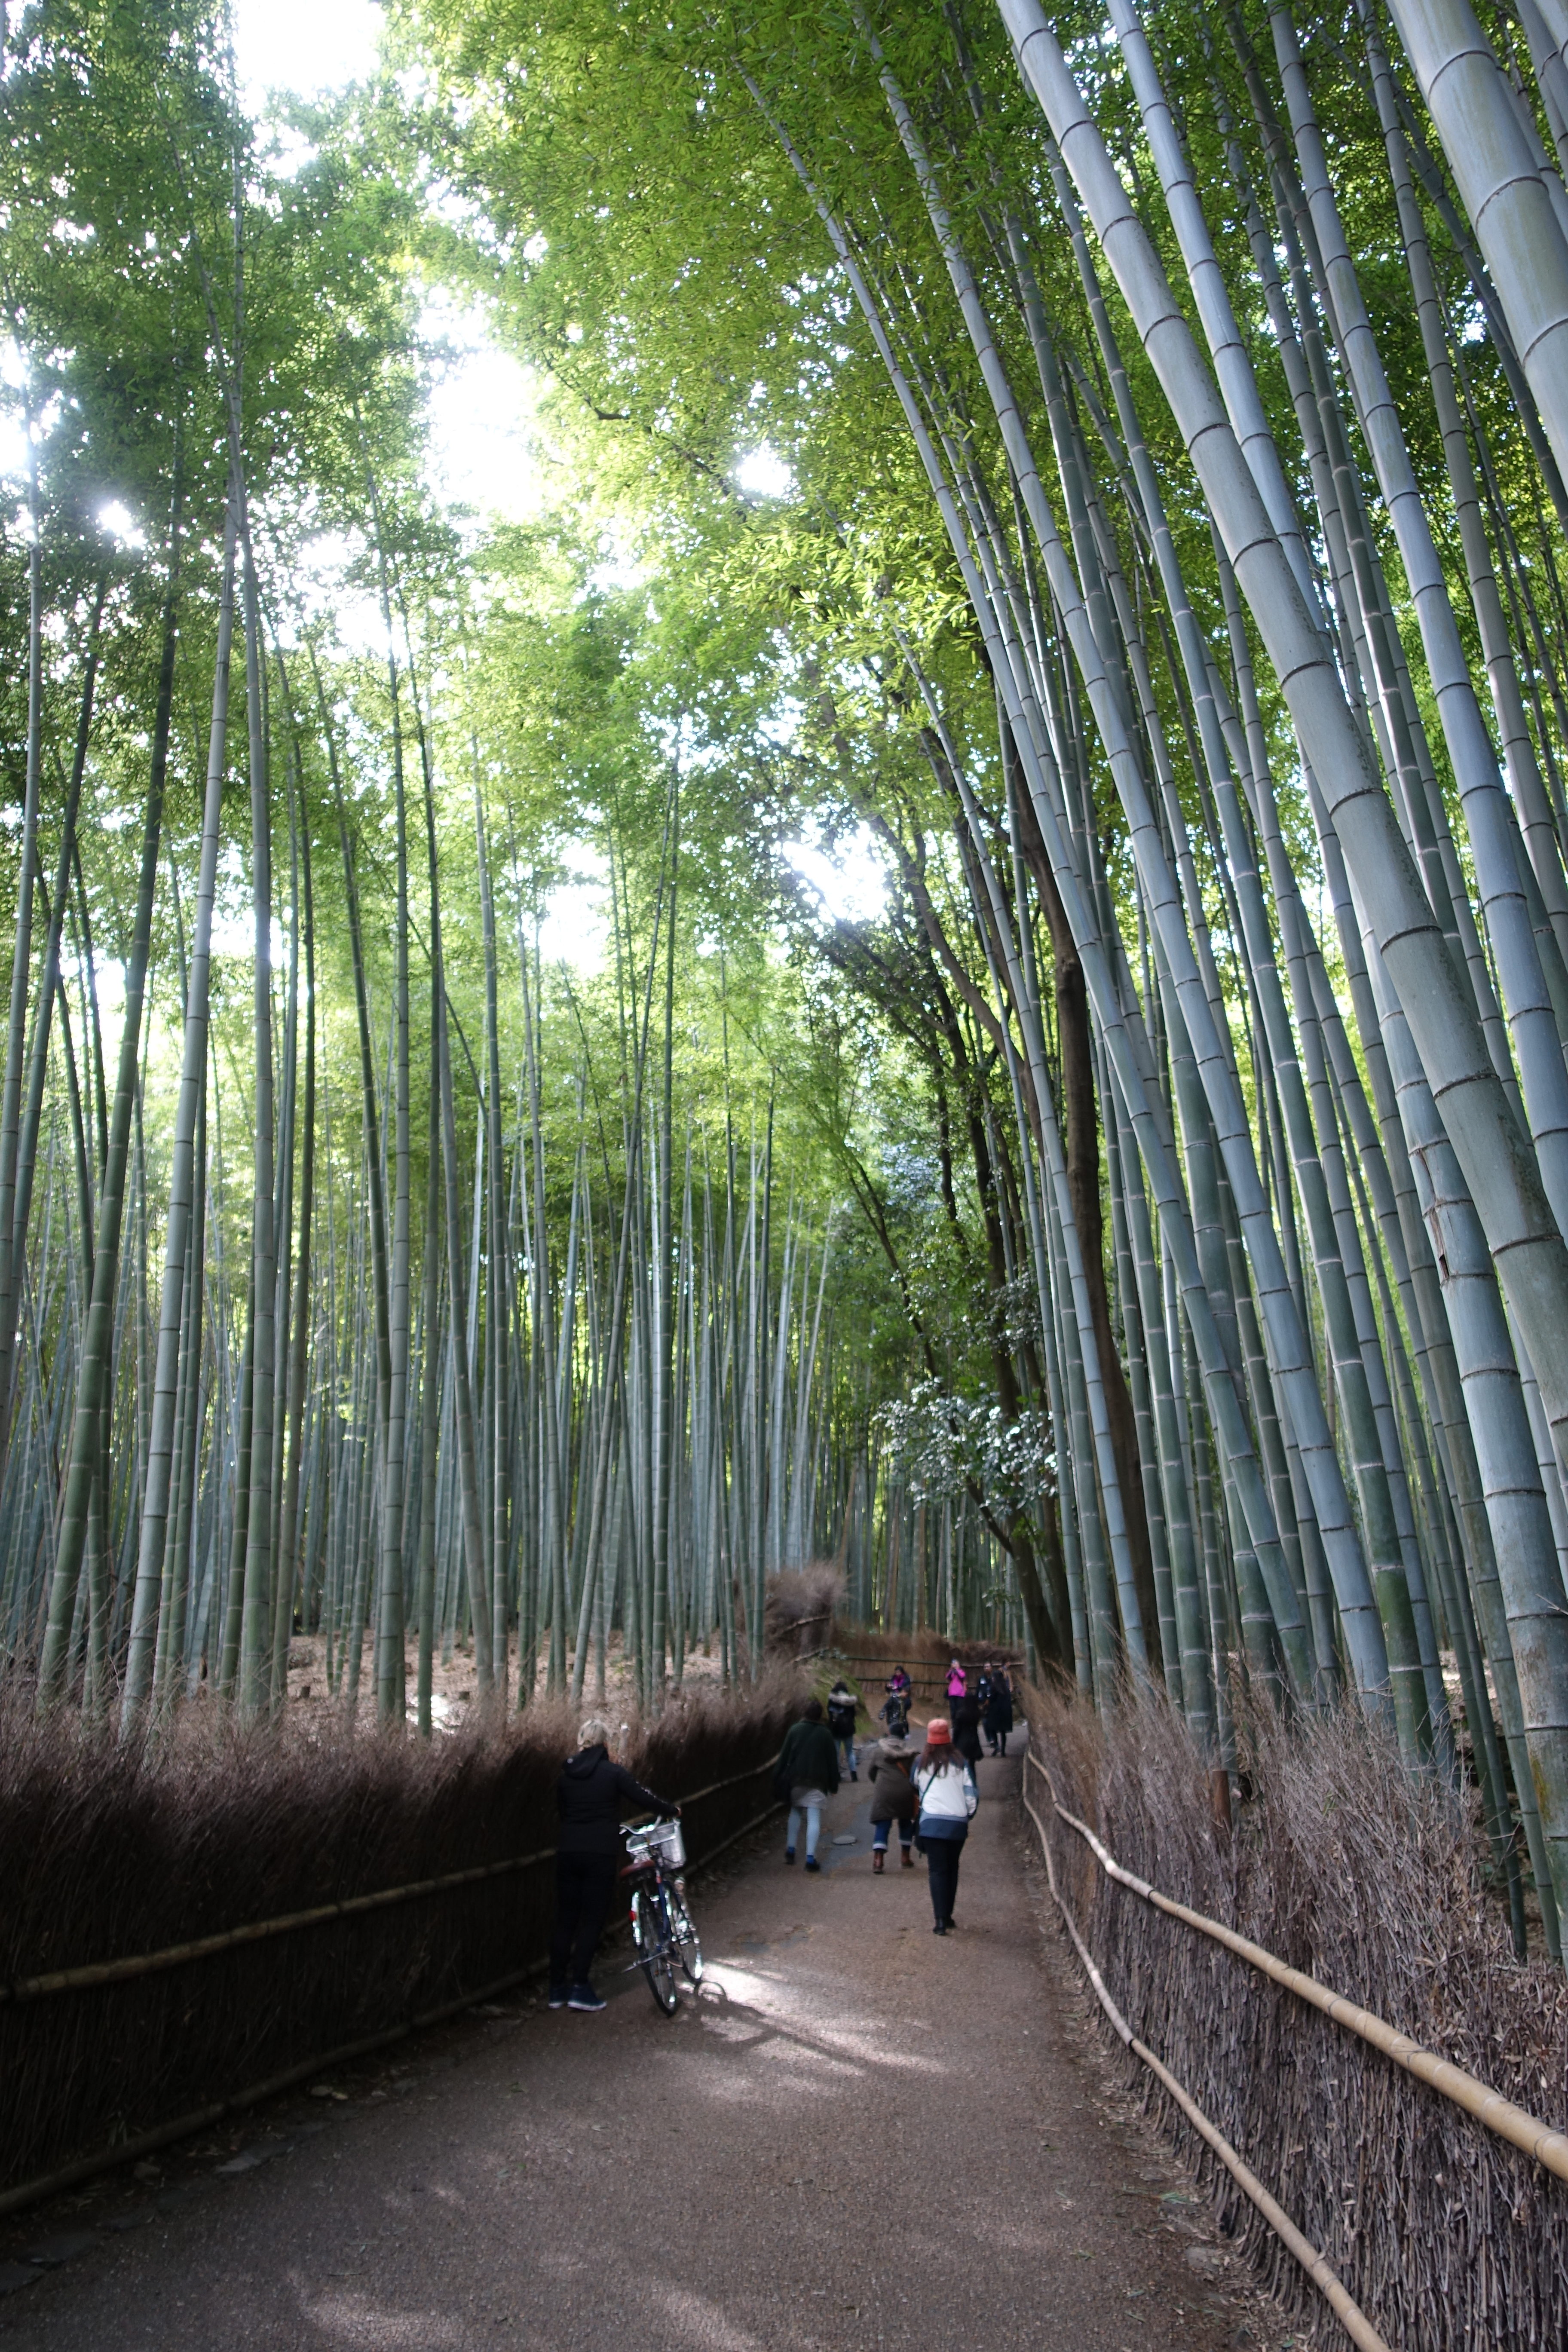 Kyoto Arashiyma Bamboo Forest 